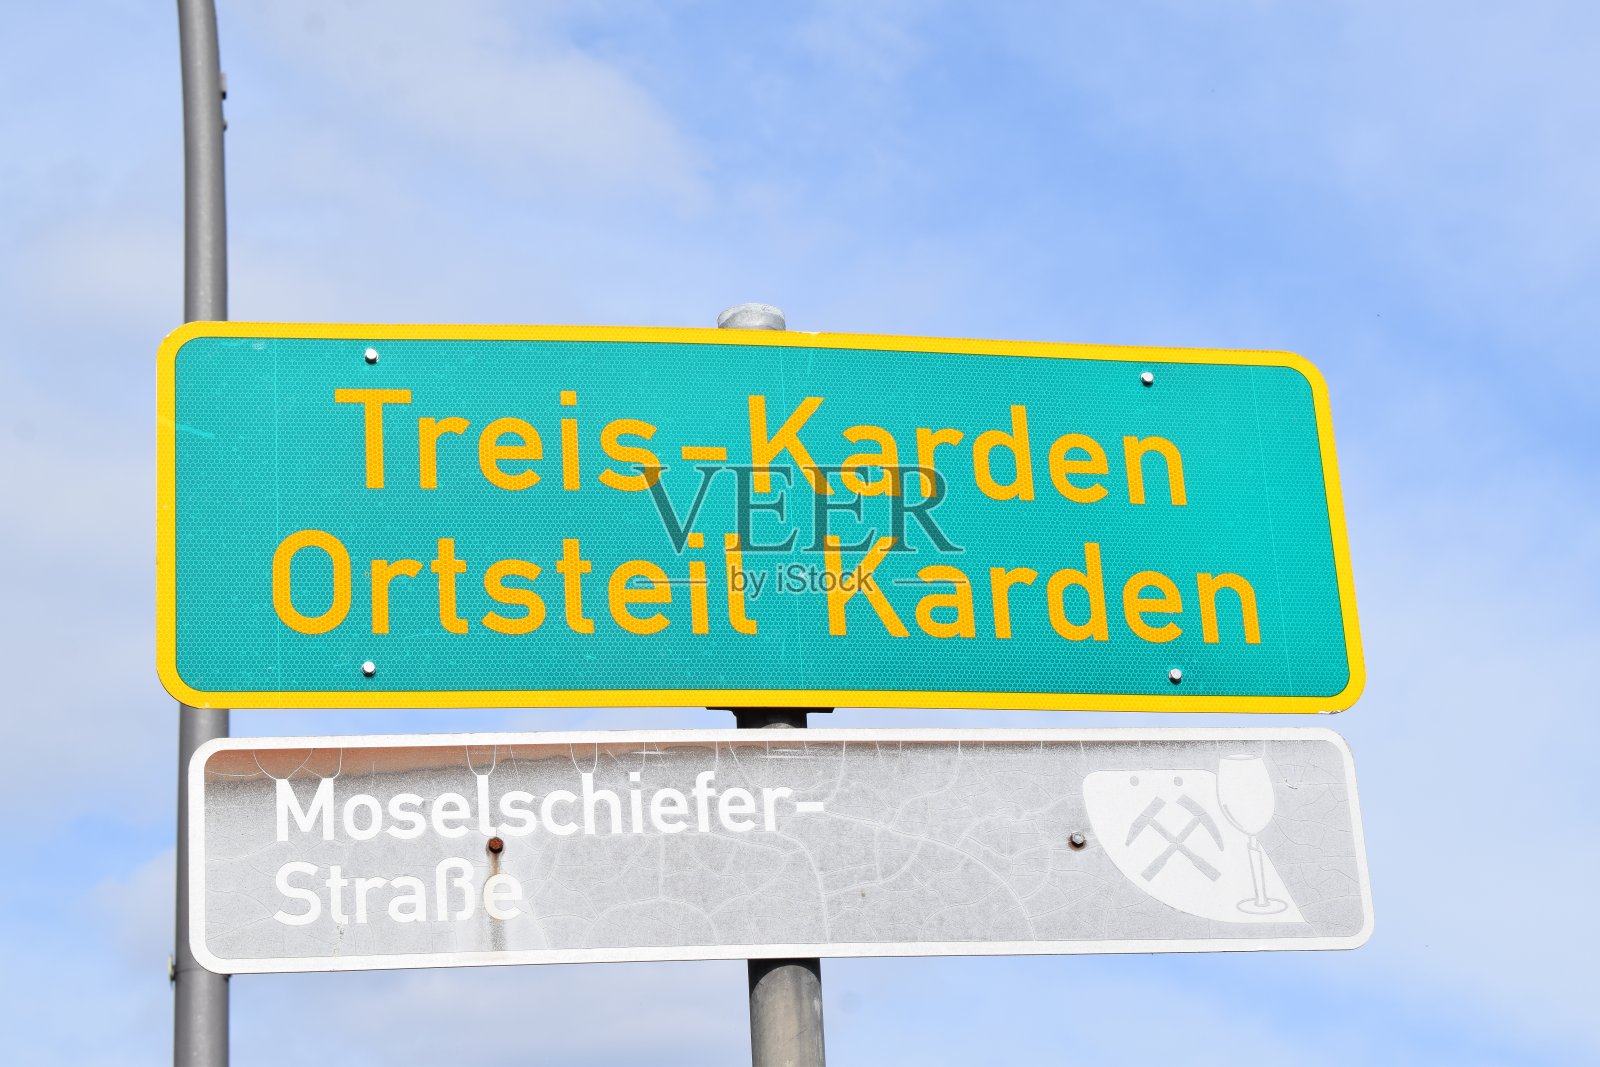 特雷斯-卡登村的标志和旅游路线照片摄影图片